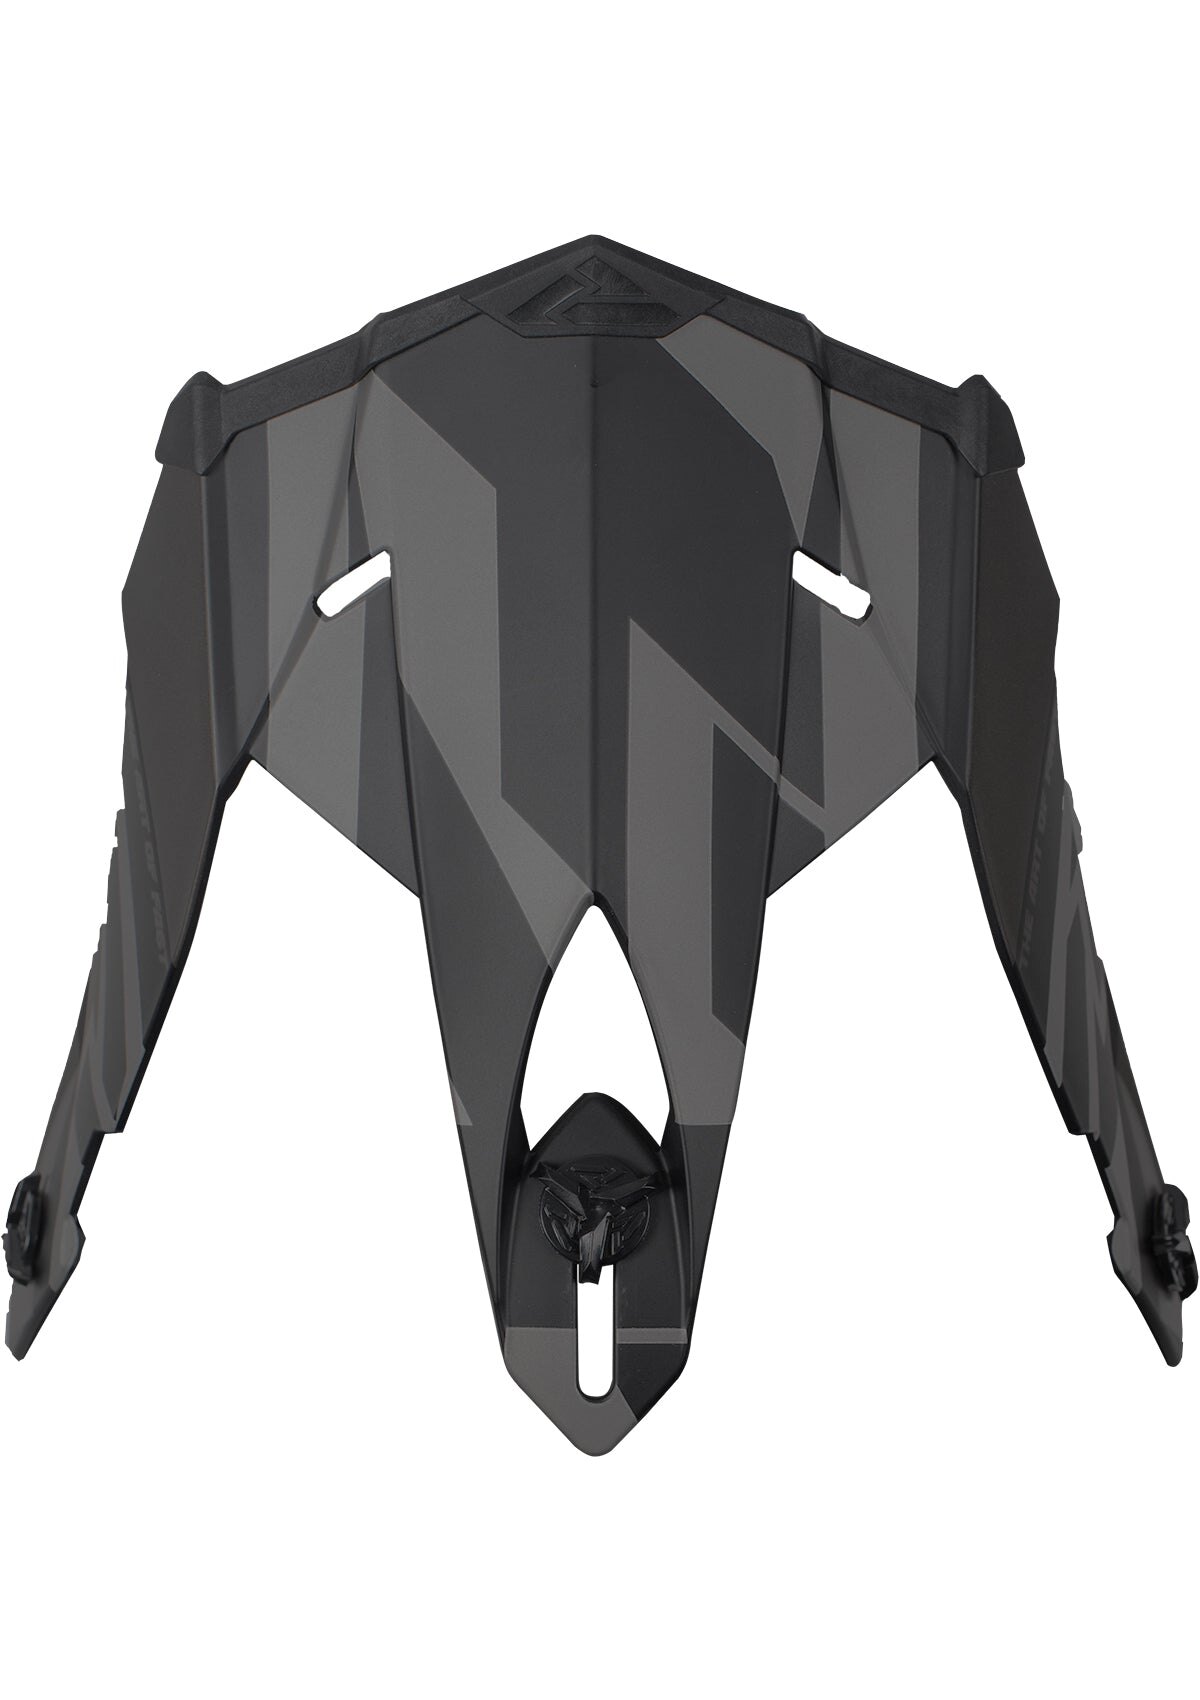 Blade 2.0 Carbon Race Div Helmet Peak